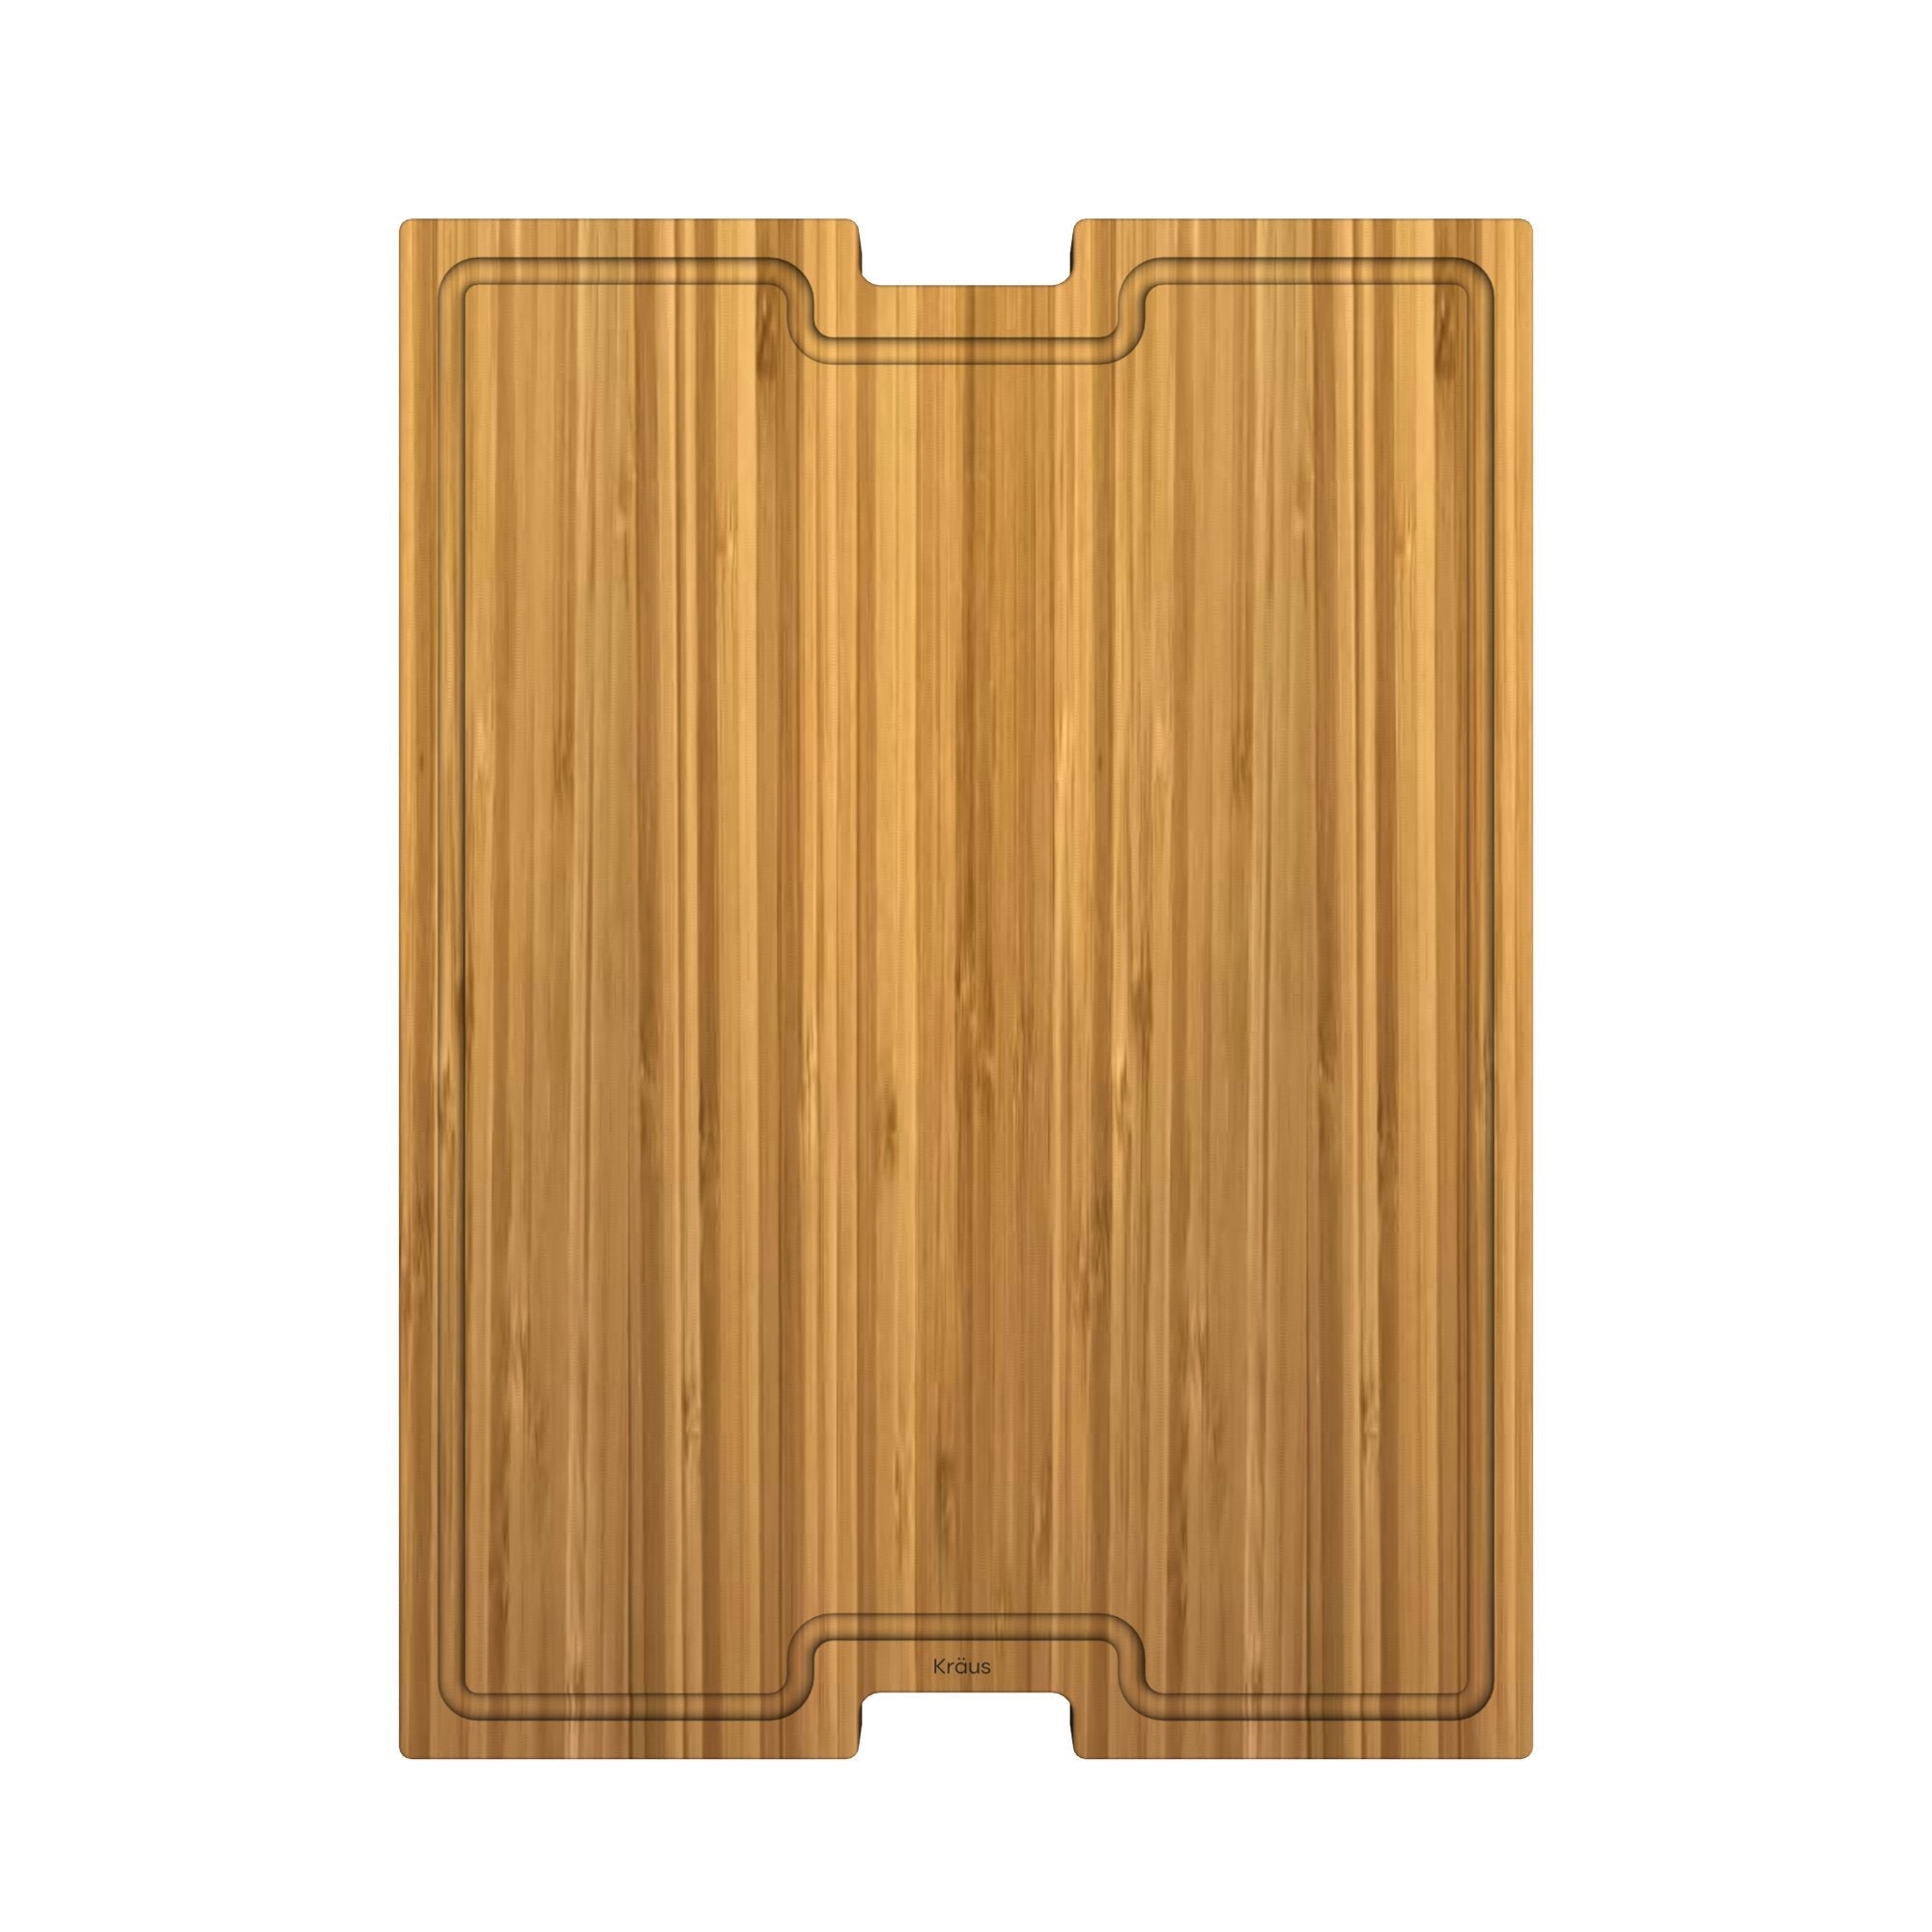 KRAUS Workstation Kitchen Sink Solid Bamboo Cutting Board/Serving Board-Kitchen Accessories-KRAUS